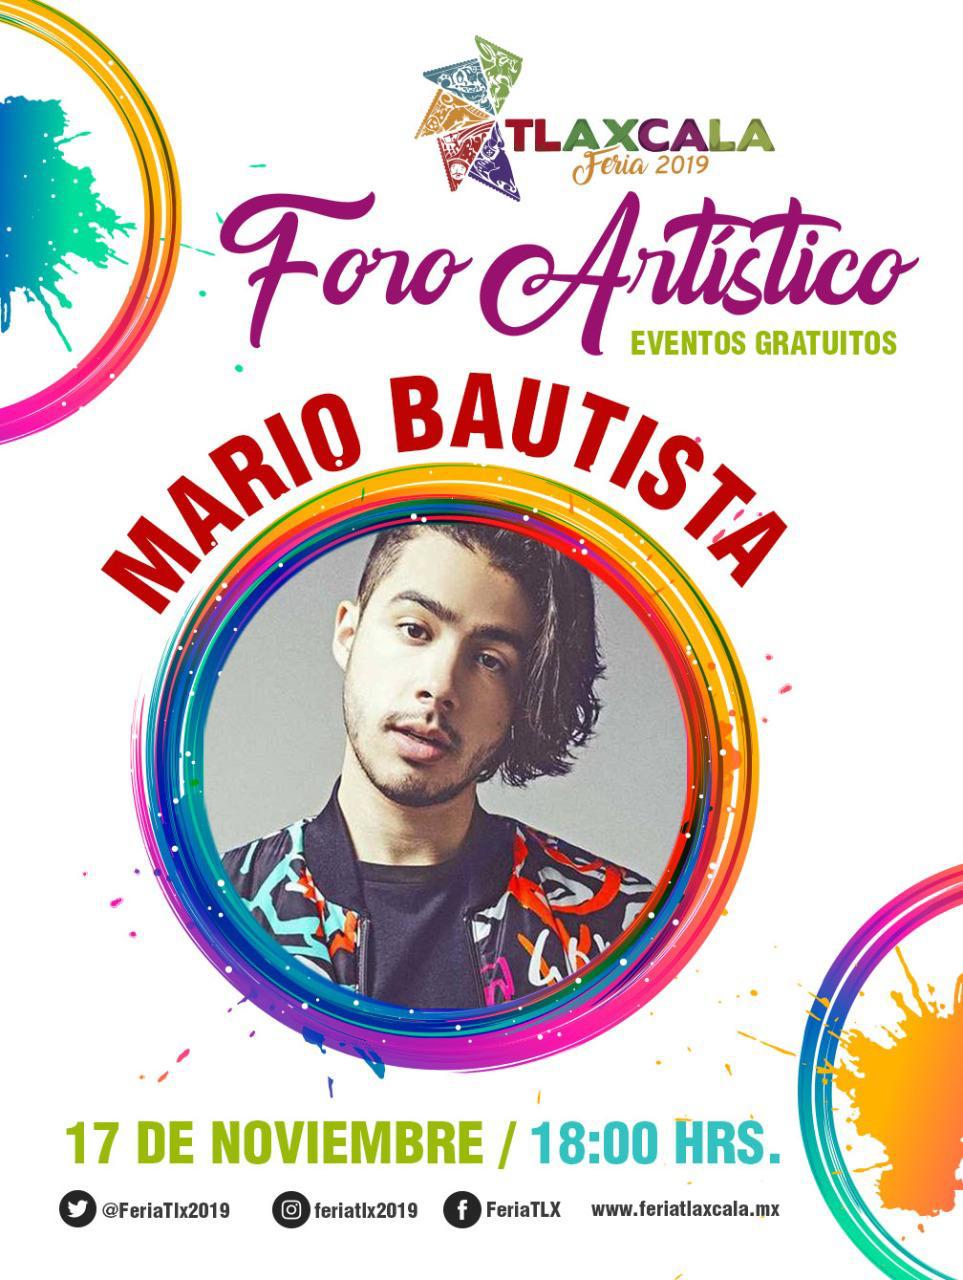 Asiste al concierto de Mario Bautista en “Tlaxcala Feria 2019”